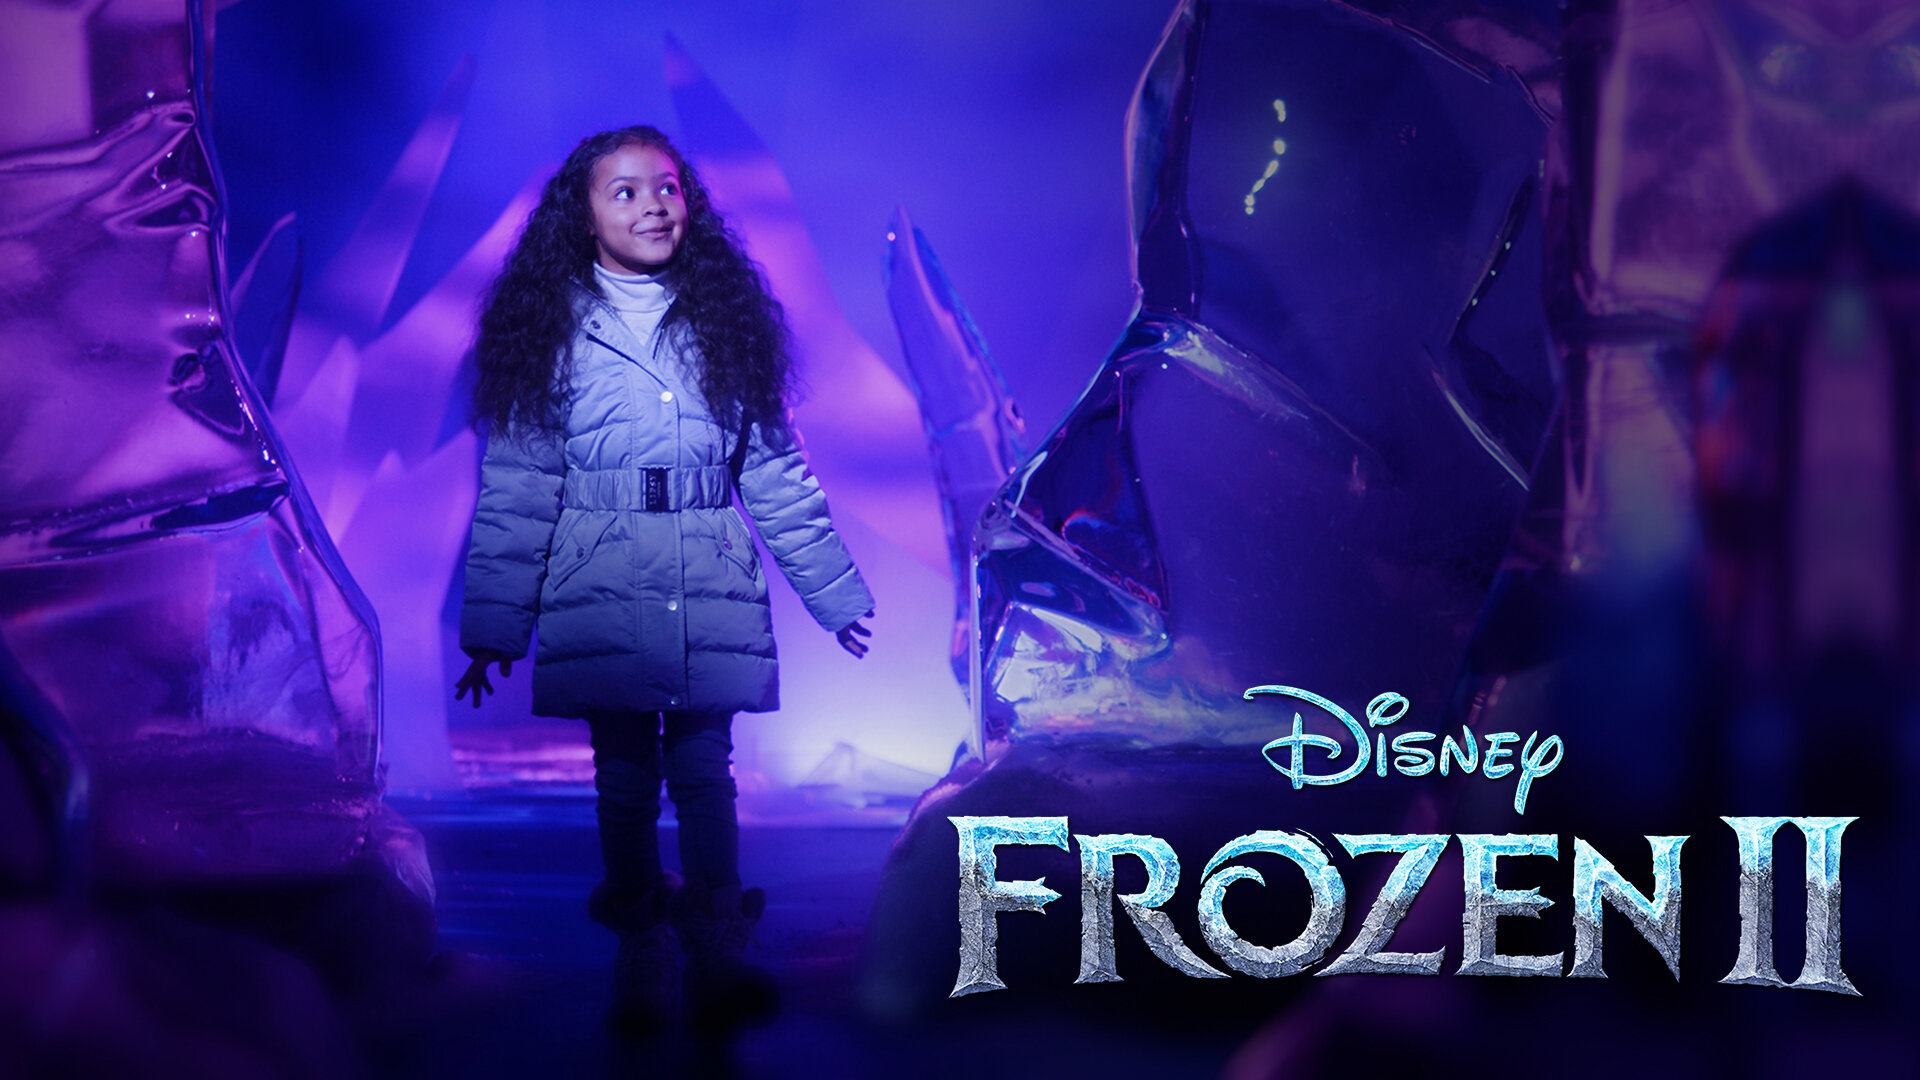 Frozen TVC thumbnail with Frozen II logo.jpg